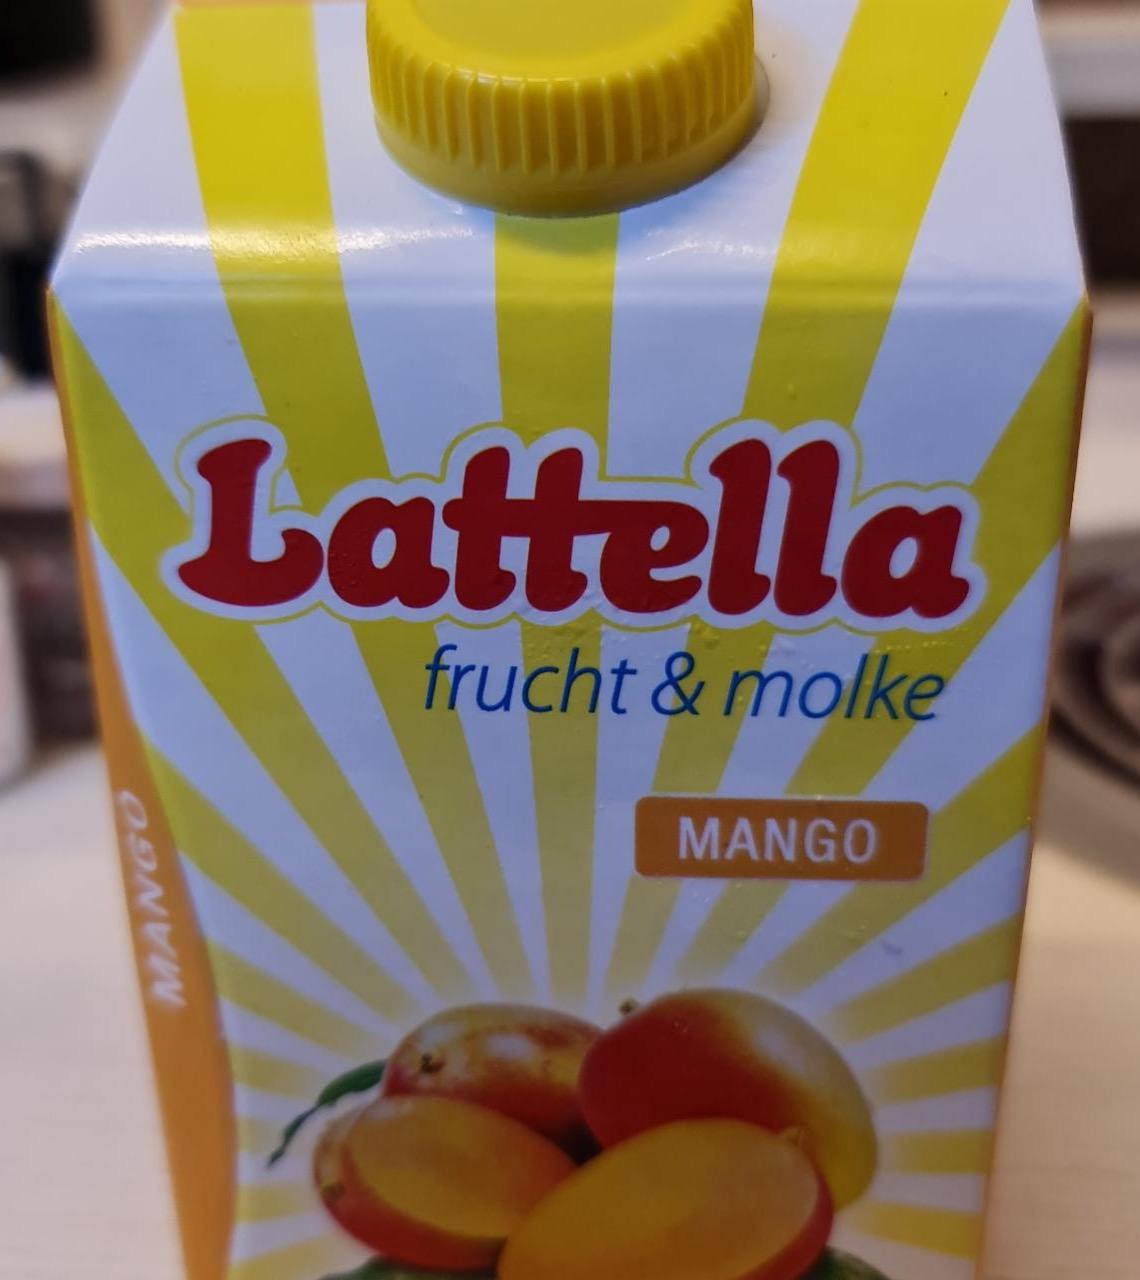 Képek - Lattella frucht & molke Mango